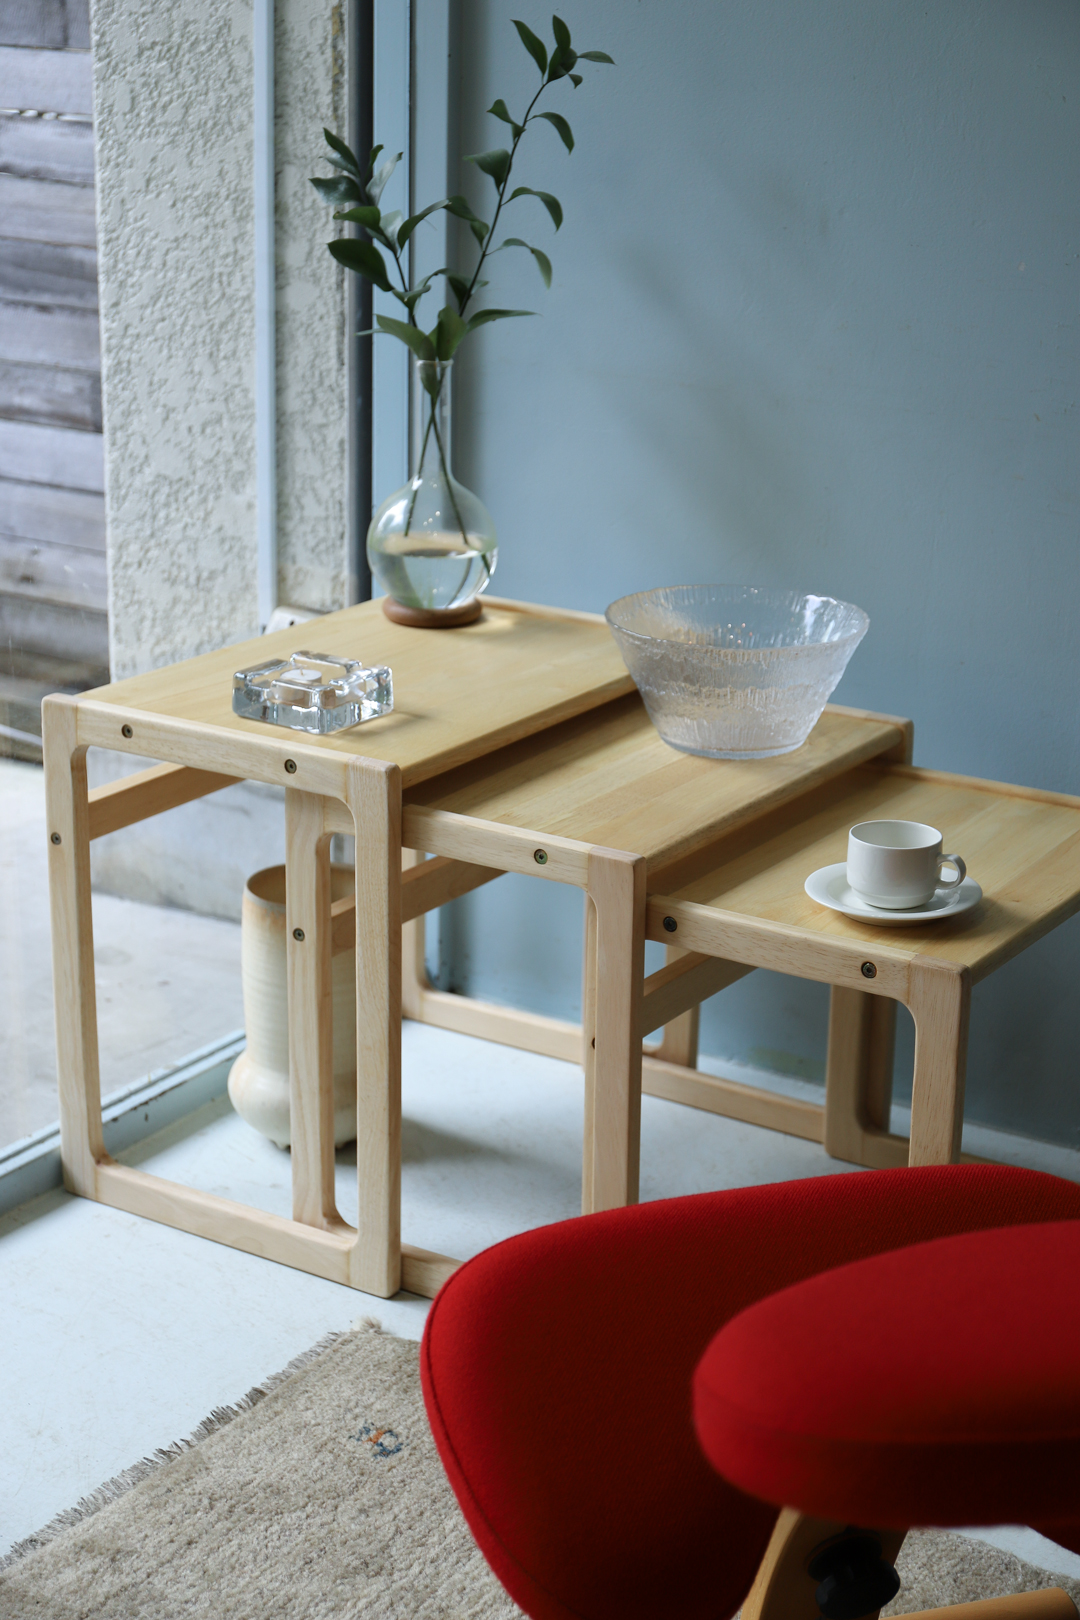 Japanese Vintage Beech Wood Nesting Table/ジャパンヴィンテージ ビーチ材 ネストテーブル 飾り台 ナチュラル 北欧モダン